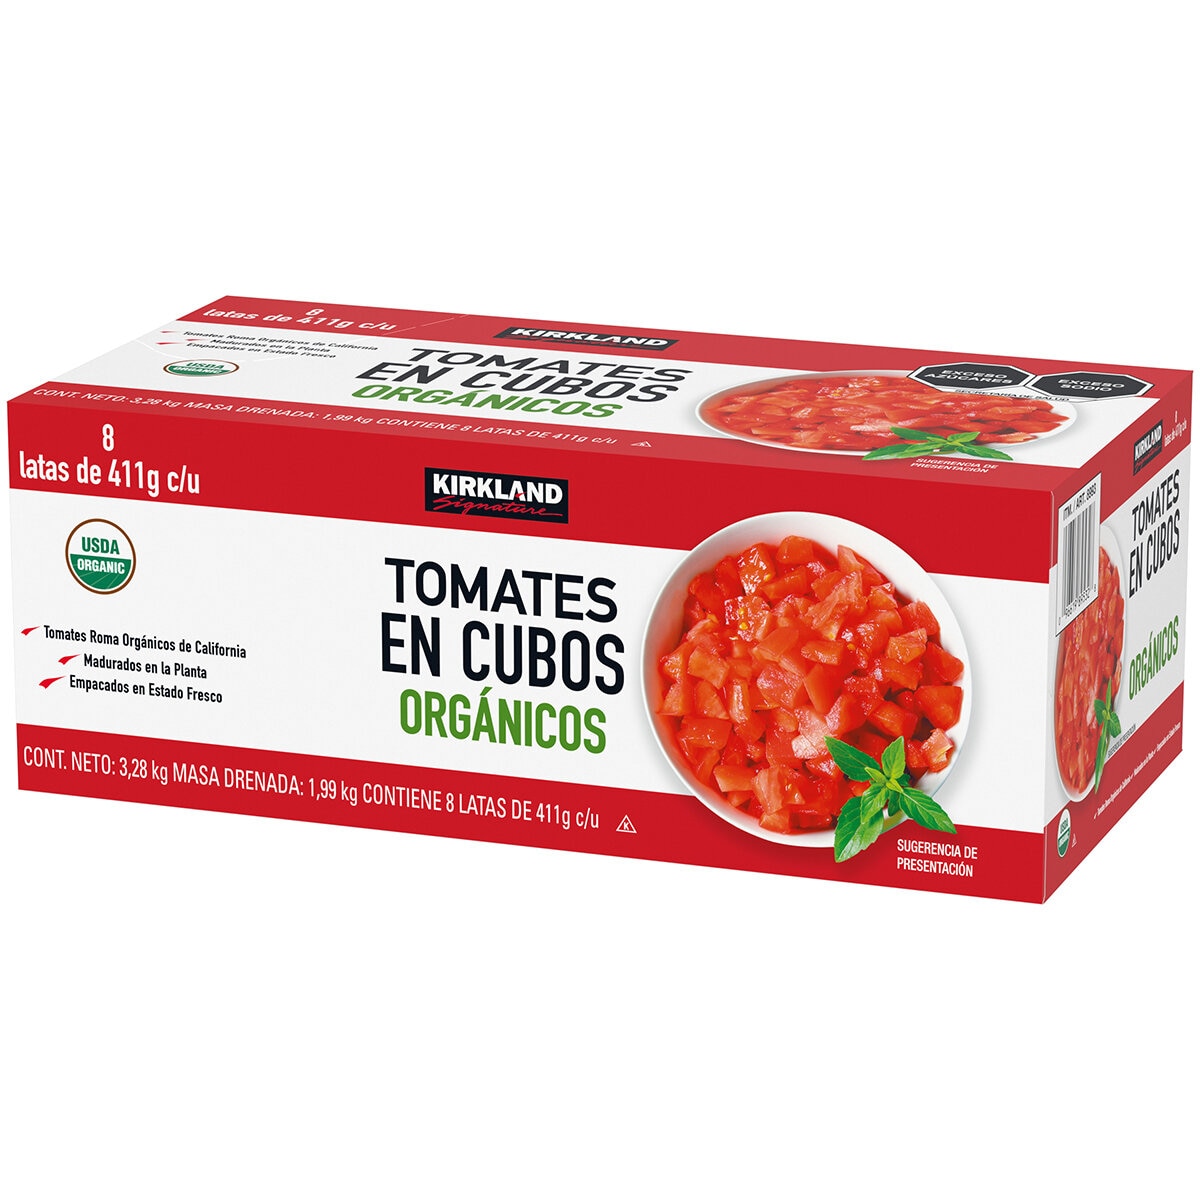 Kirkland Signature Tomates Orgánicos en cubos 8 pzas de 411 gr